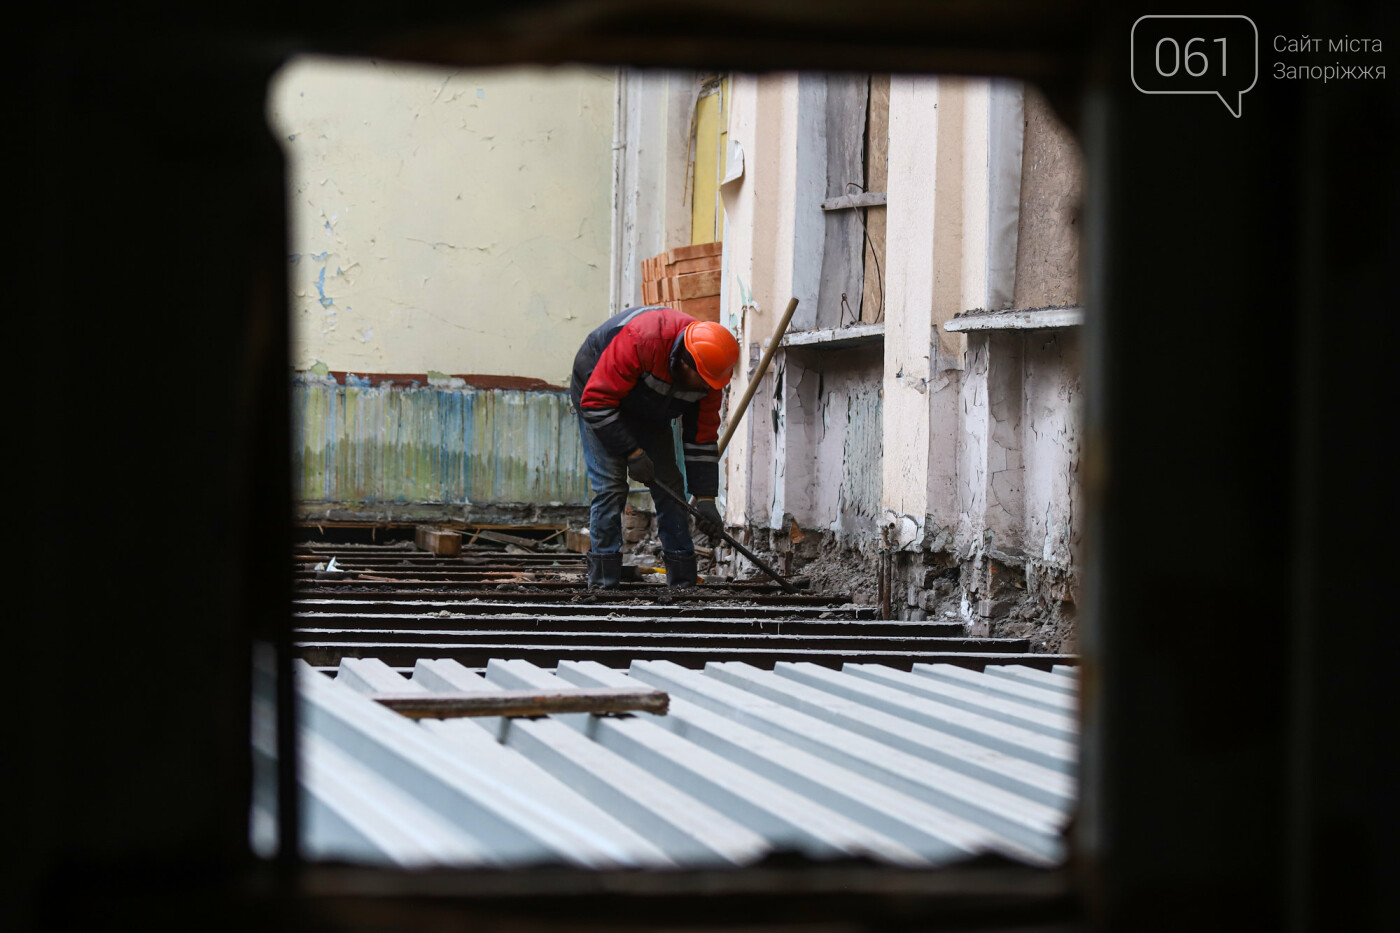 В Запорожье восстанавливают школу, которая пострадала во время масштабного пожара 5 лет назад, - ФОТОРЕПОРТАЖ , фото-31